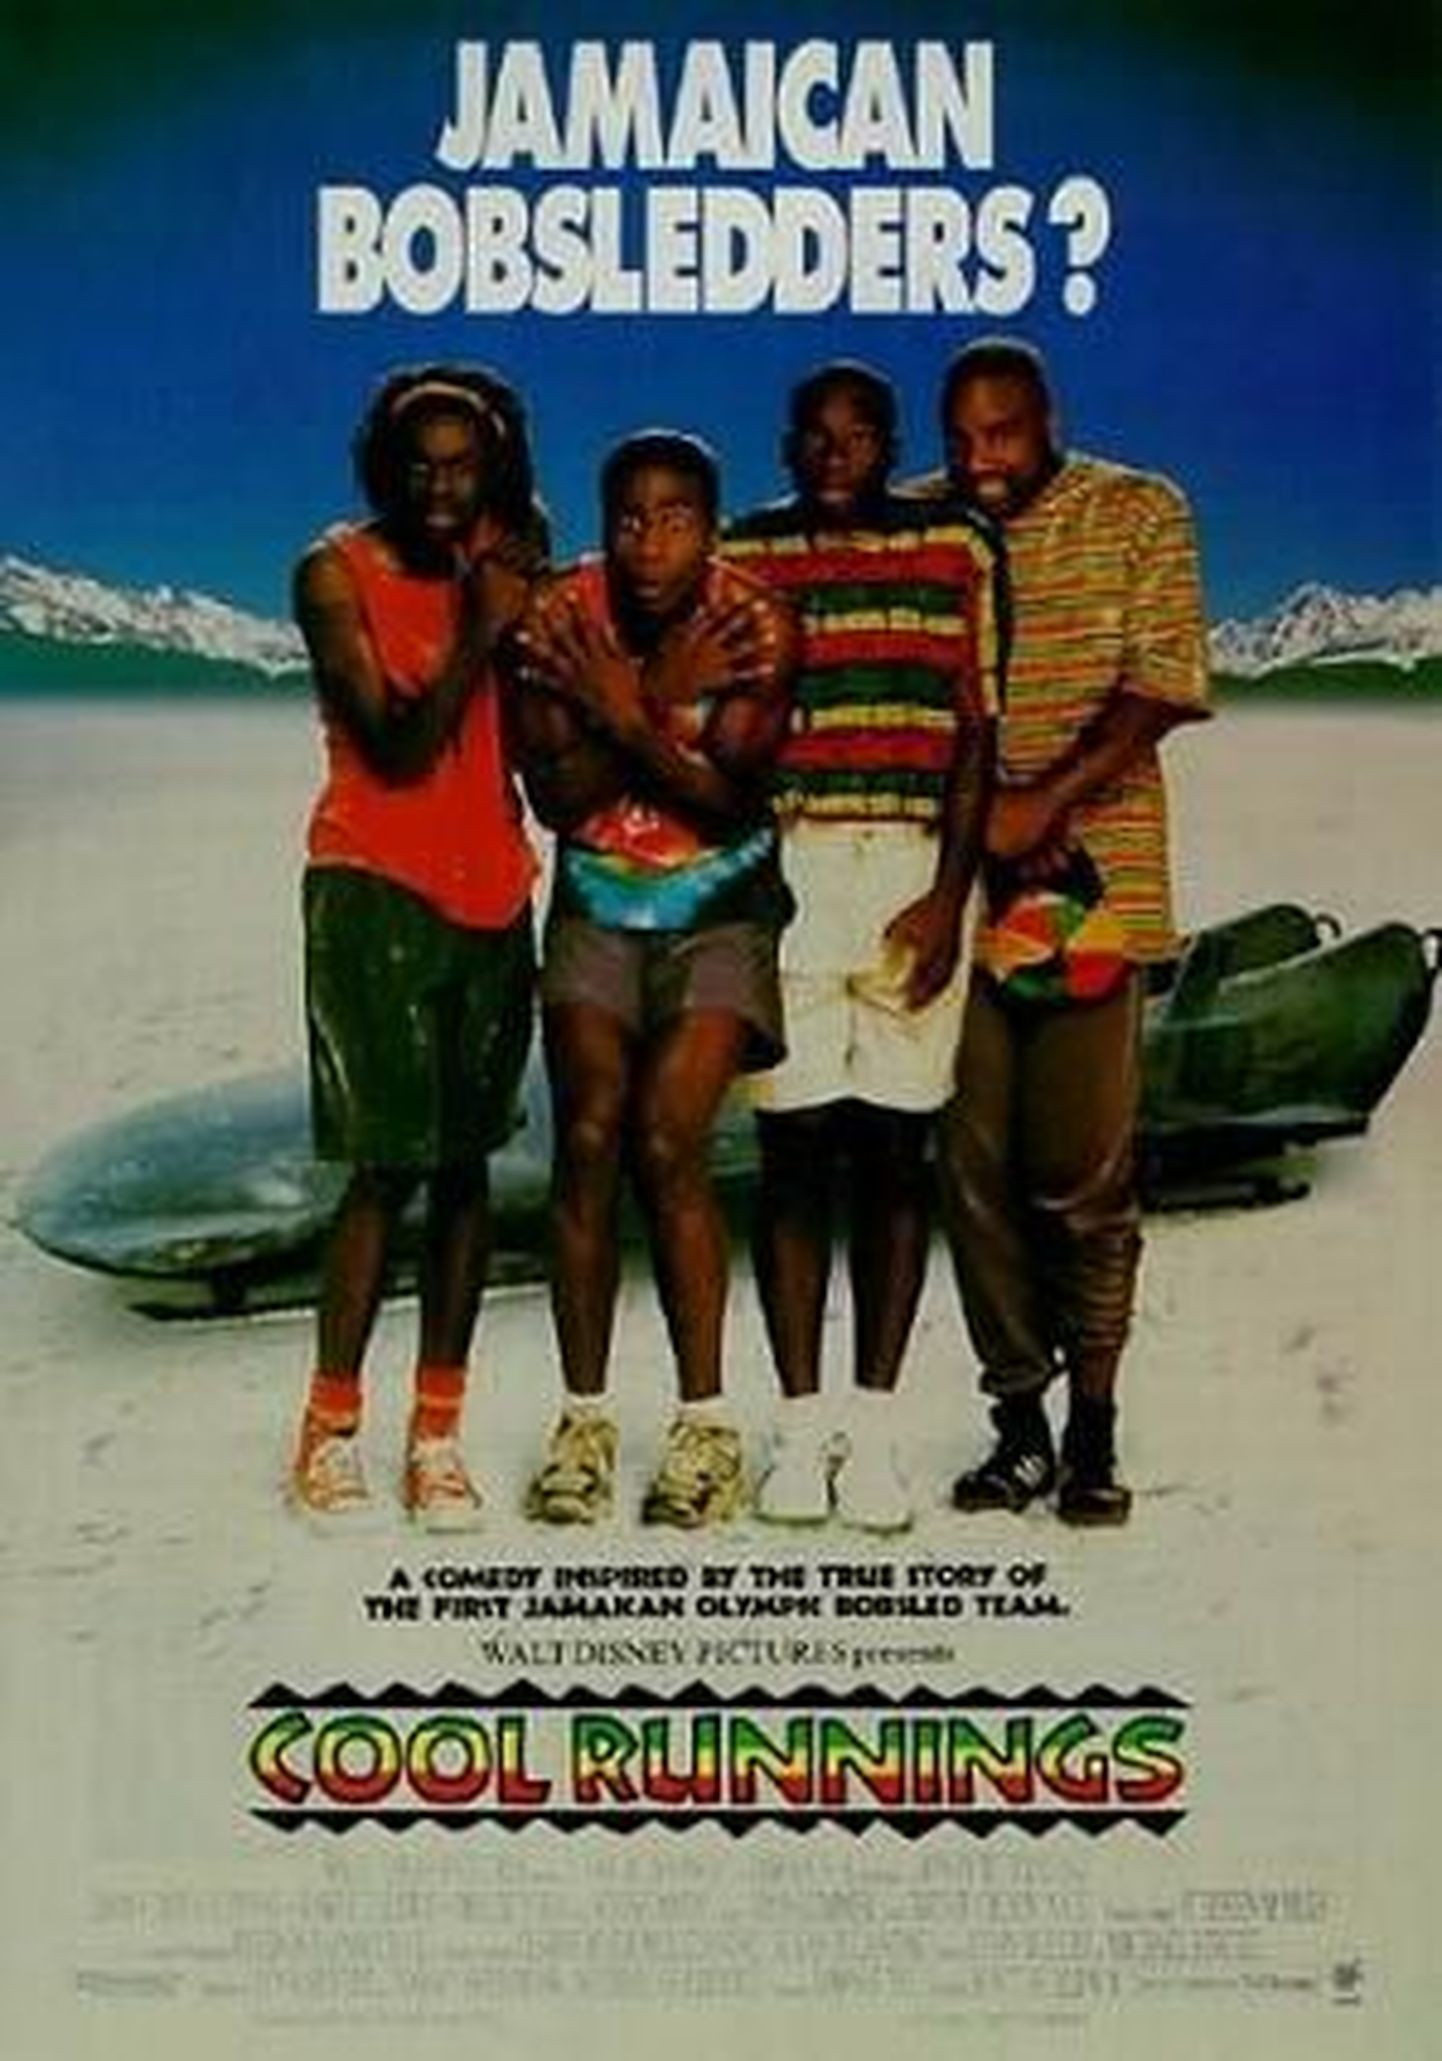 Jamaica bobikelgumeeskonnast tehtud filmi Cool Runningsi reklaamplakat.